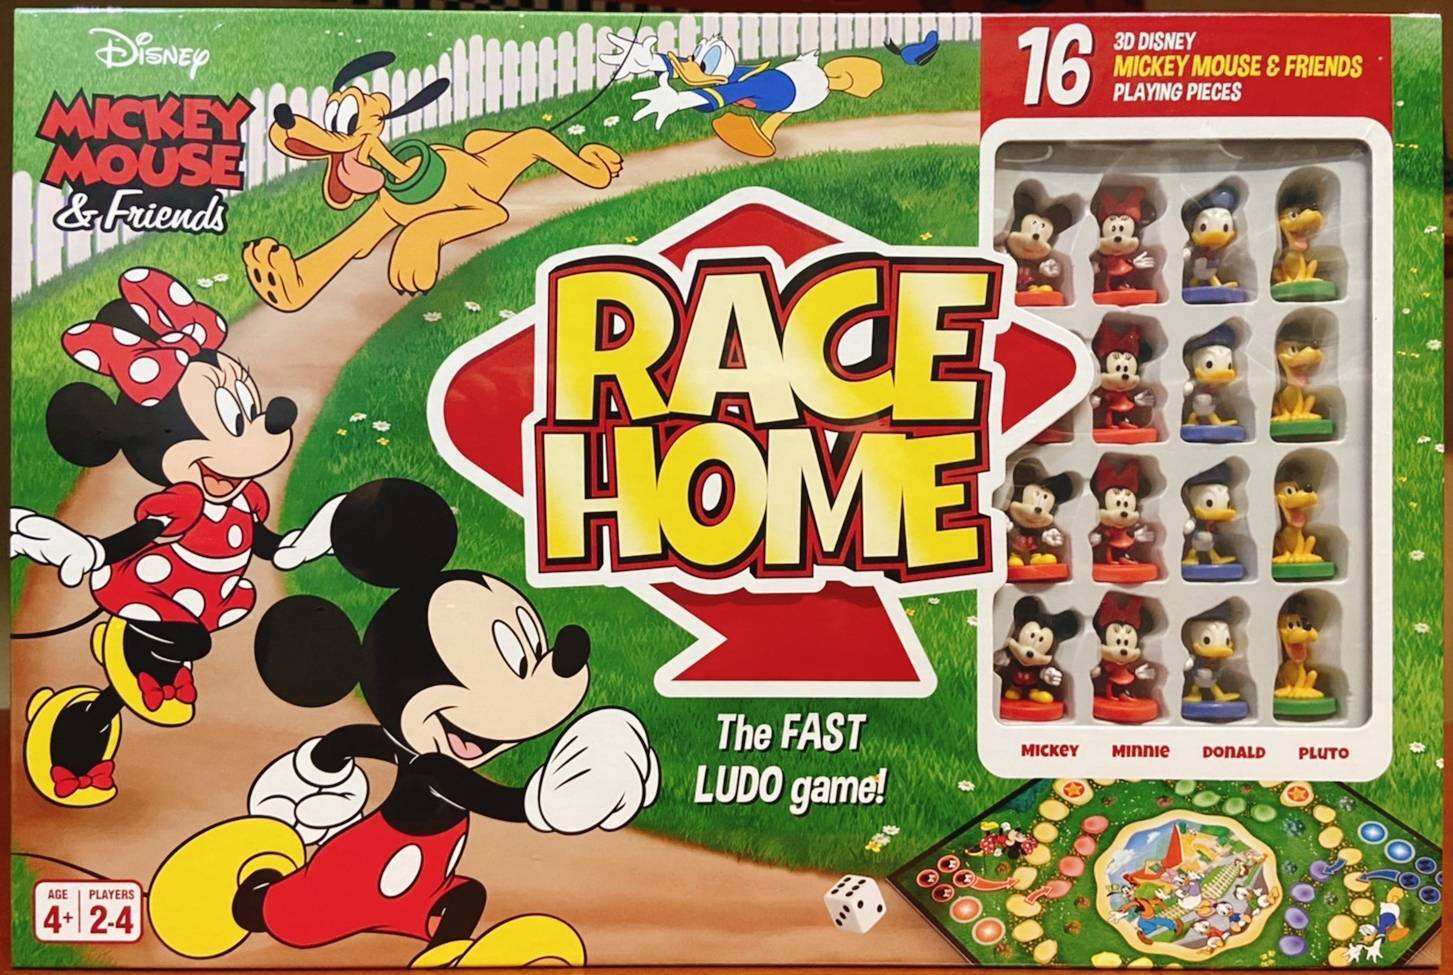 ディズニー ミッキーマウス フレンズ レースホーム ボードゲーム Disney Mickeymouse Friends Racehome Boardgame 海外アニメと映画のボードゲームショップ カクテルトイズ Cocktail Toys